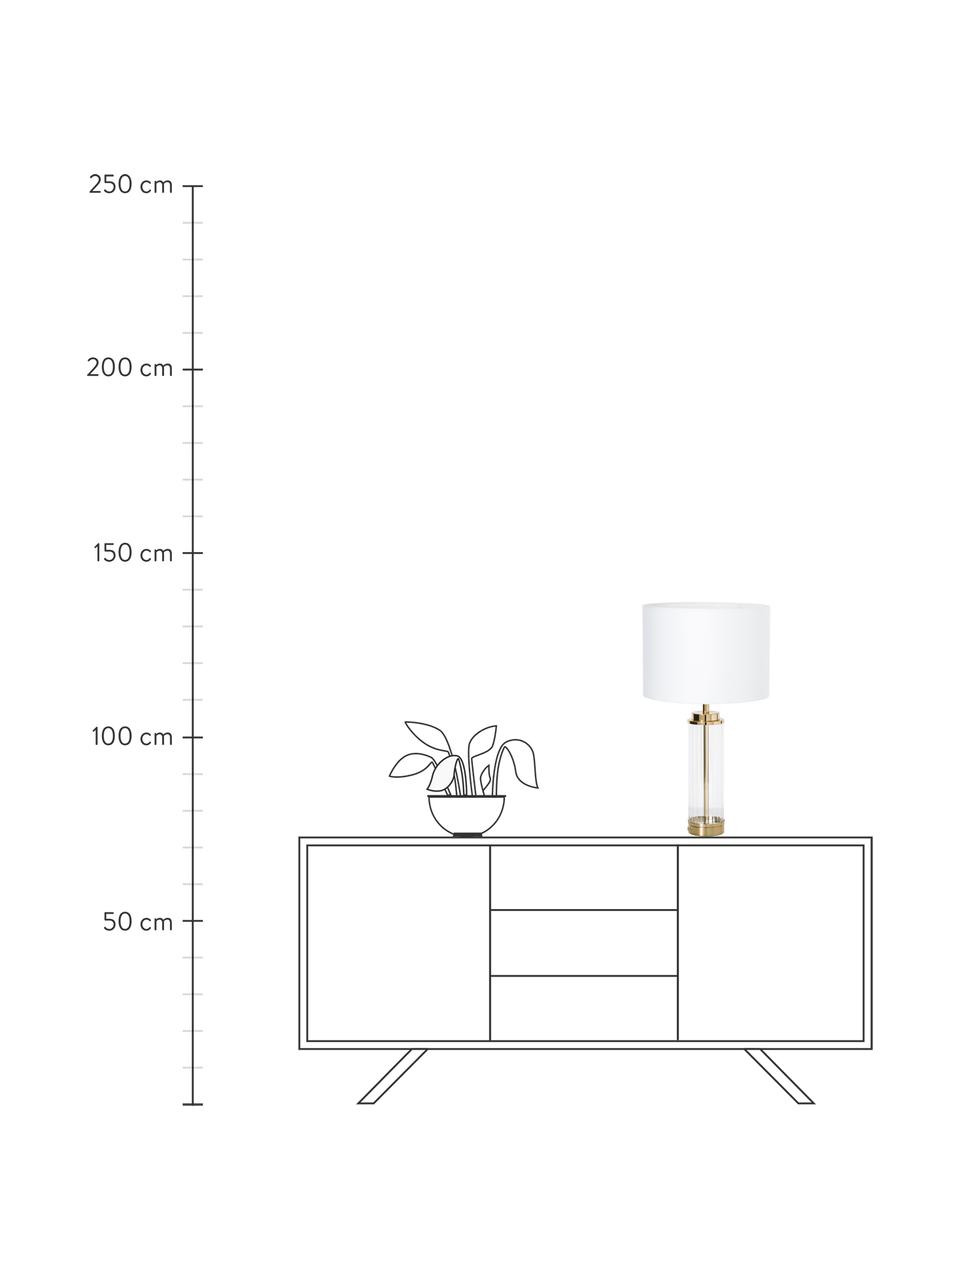 Lampada da tavolo grande con base in vetro Gabor, Paralume: tessuto, Base della lampada: metallo, vetro, Bianco, dorato, Ø 35 x Alt. 64 cm